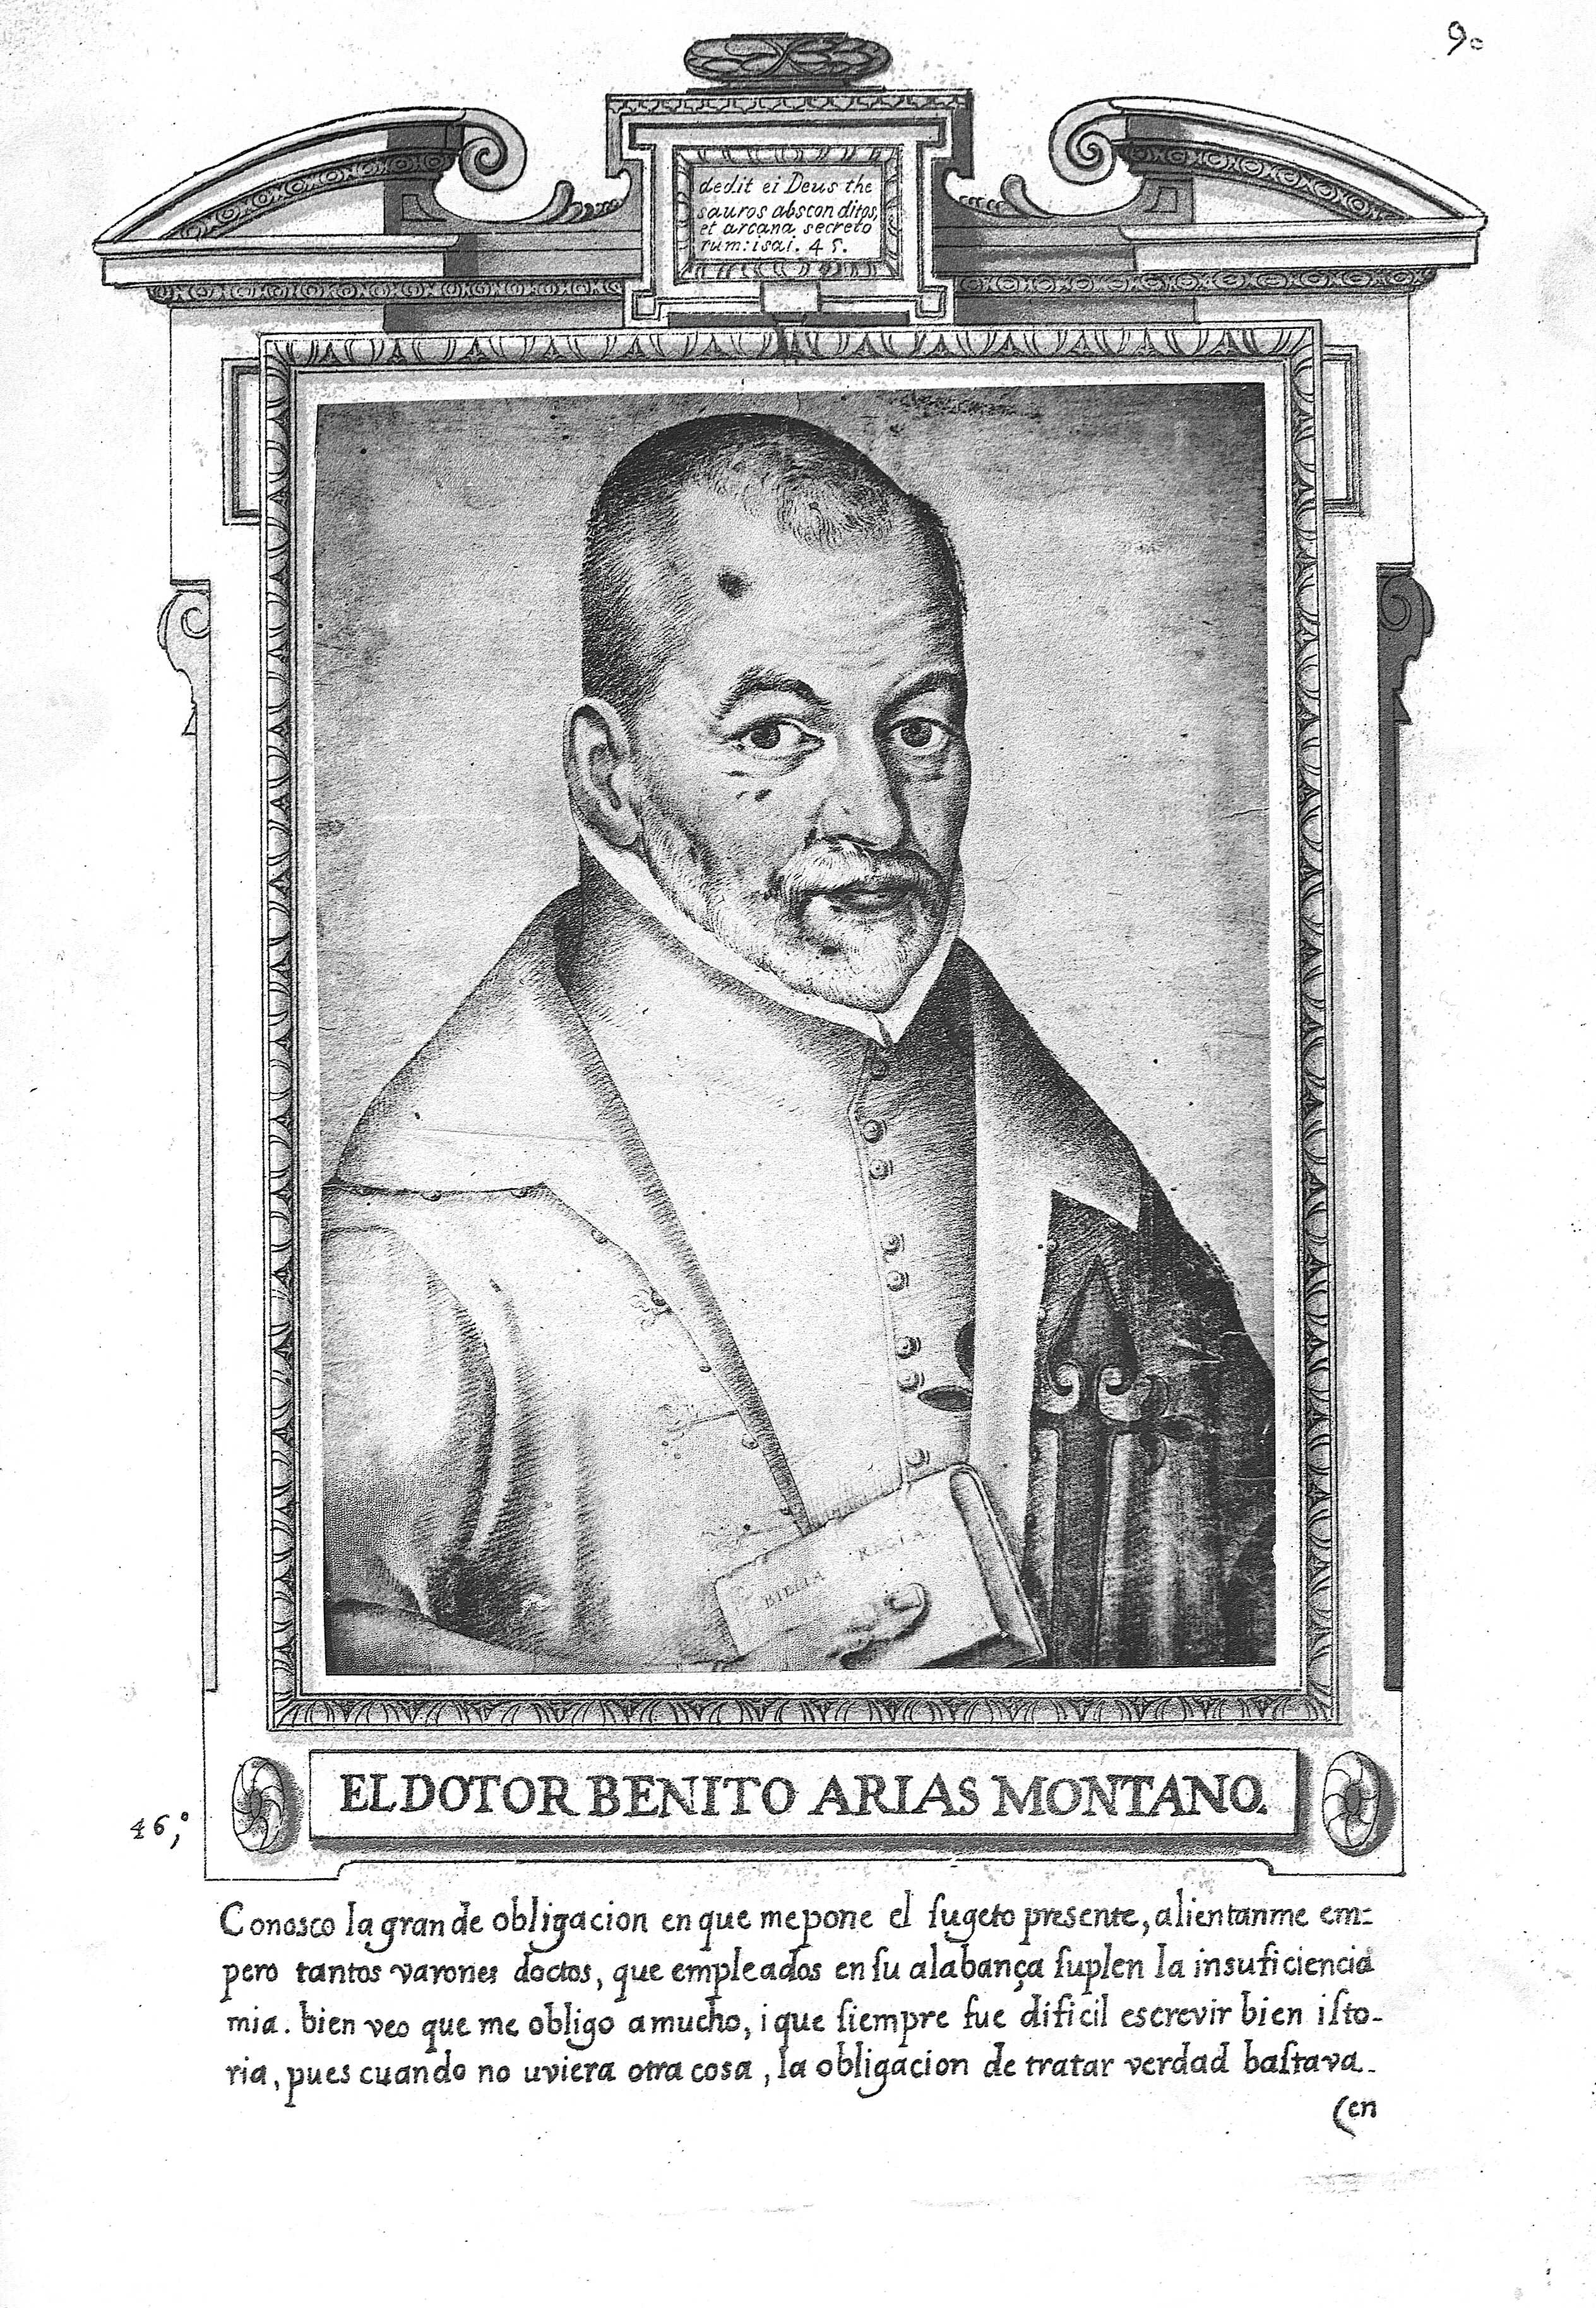 El Doctor Benito Arias Montano